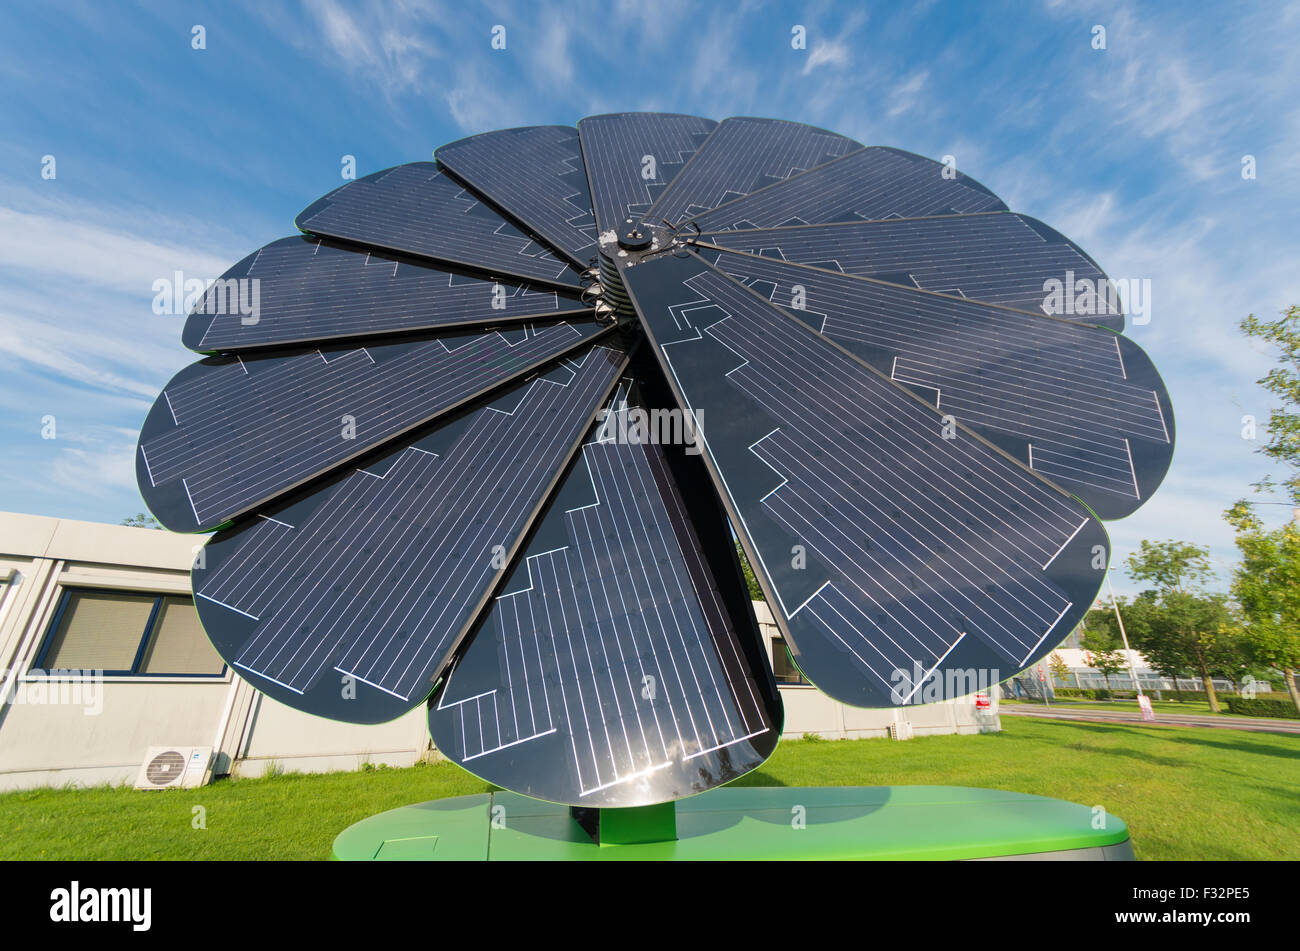 GRONINGEN, Niederlande - 22. August 2015: Smart Blume faltbare Solarkollektor im Bereich Universität Groningen. Der smart flow Stockfoto